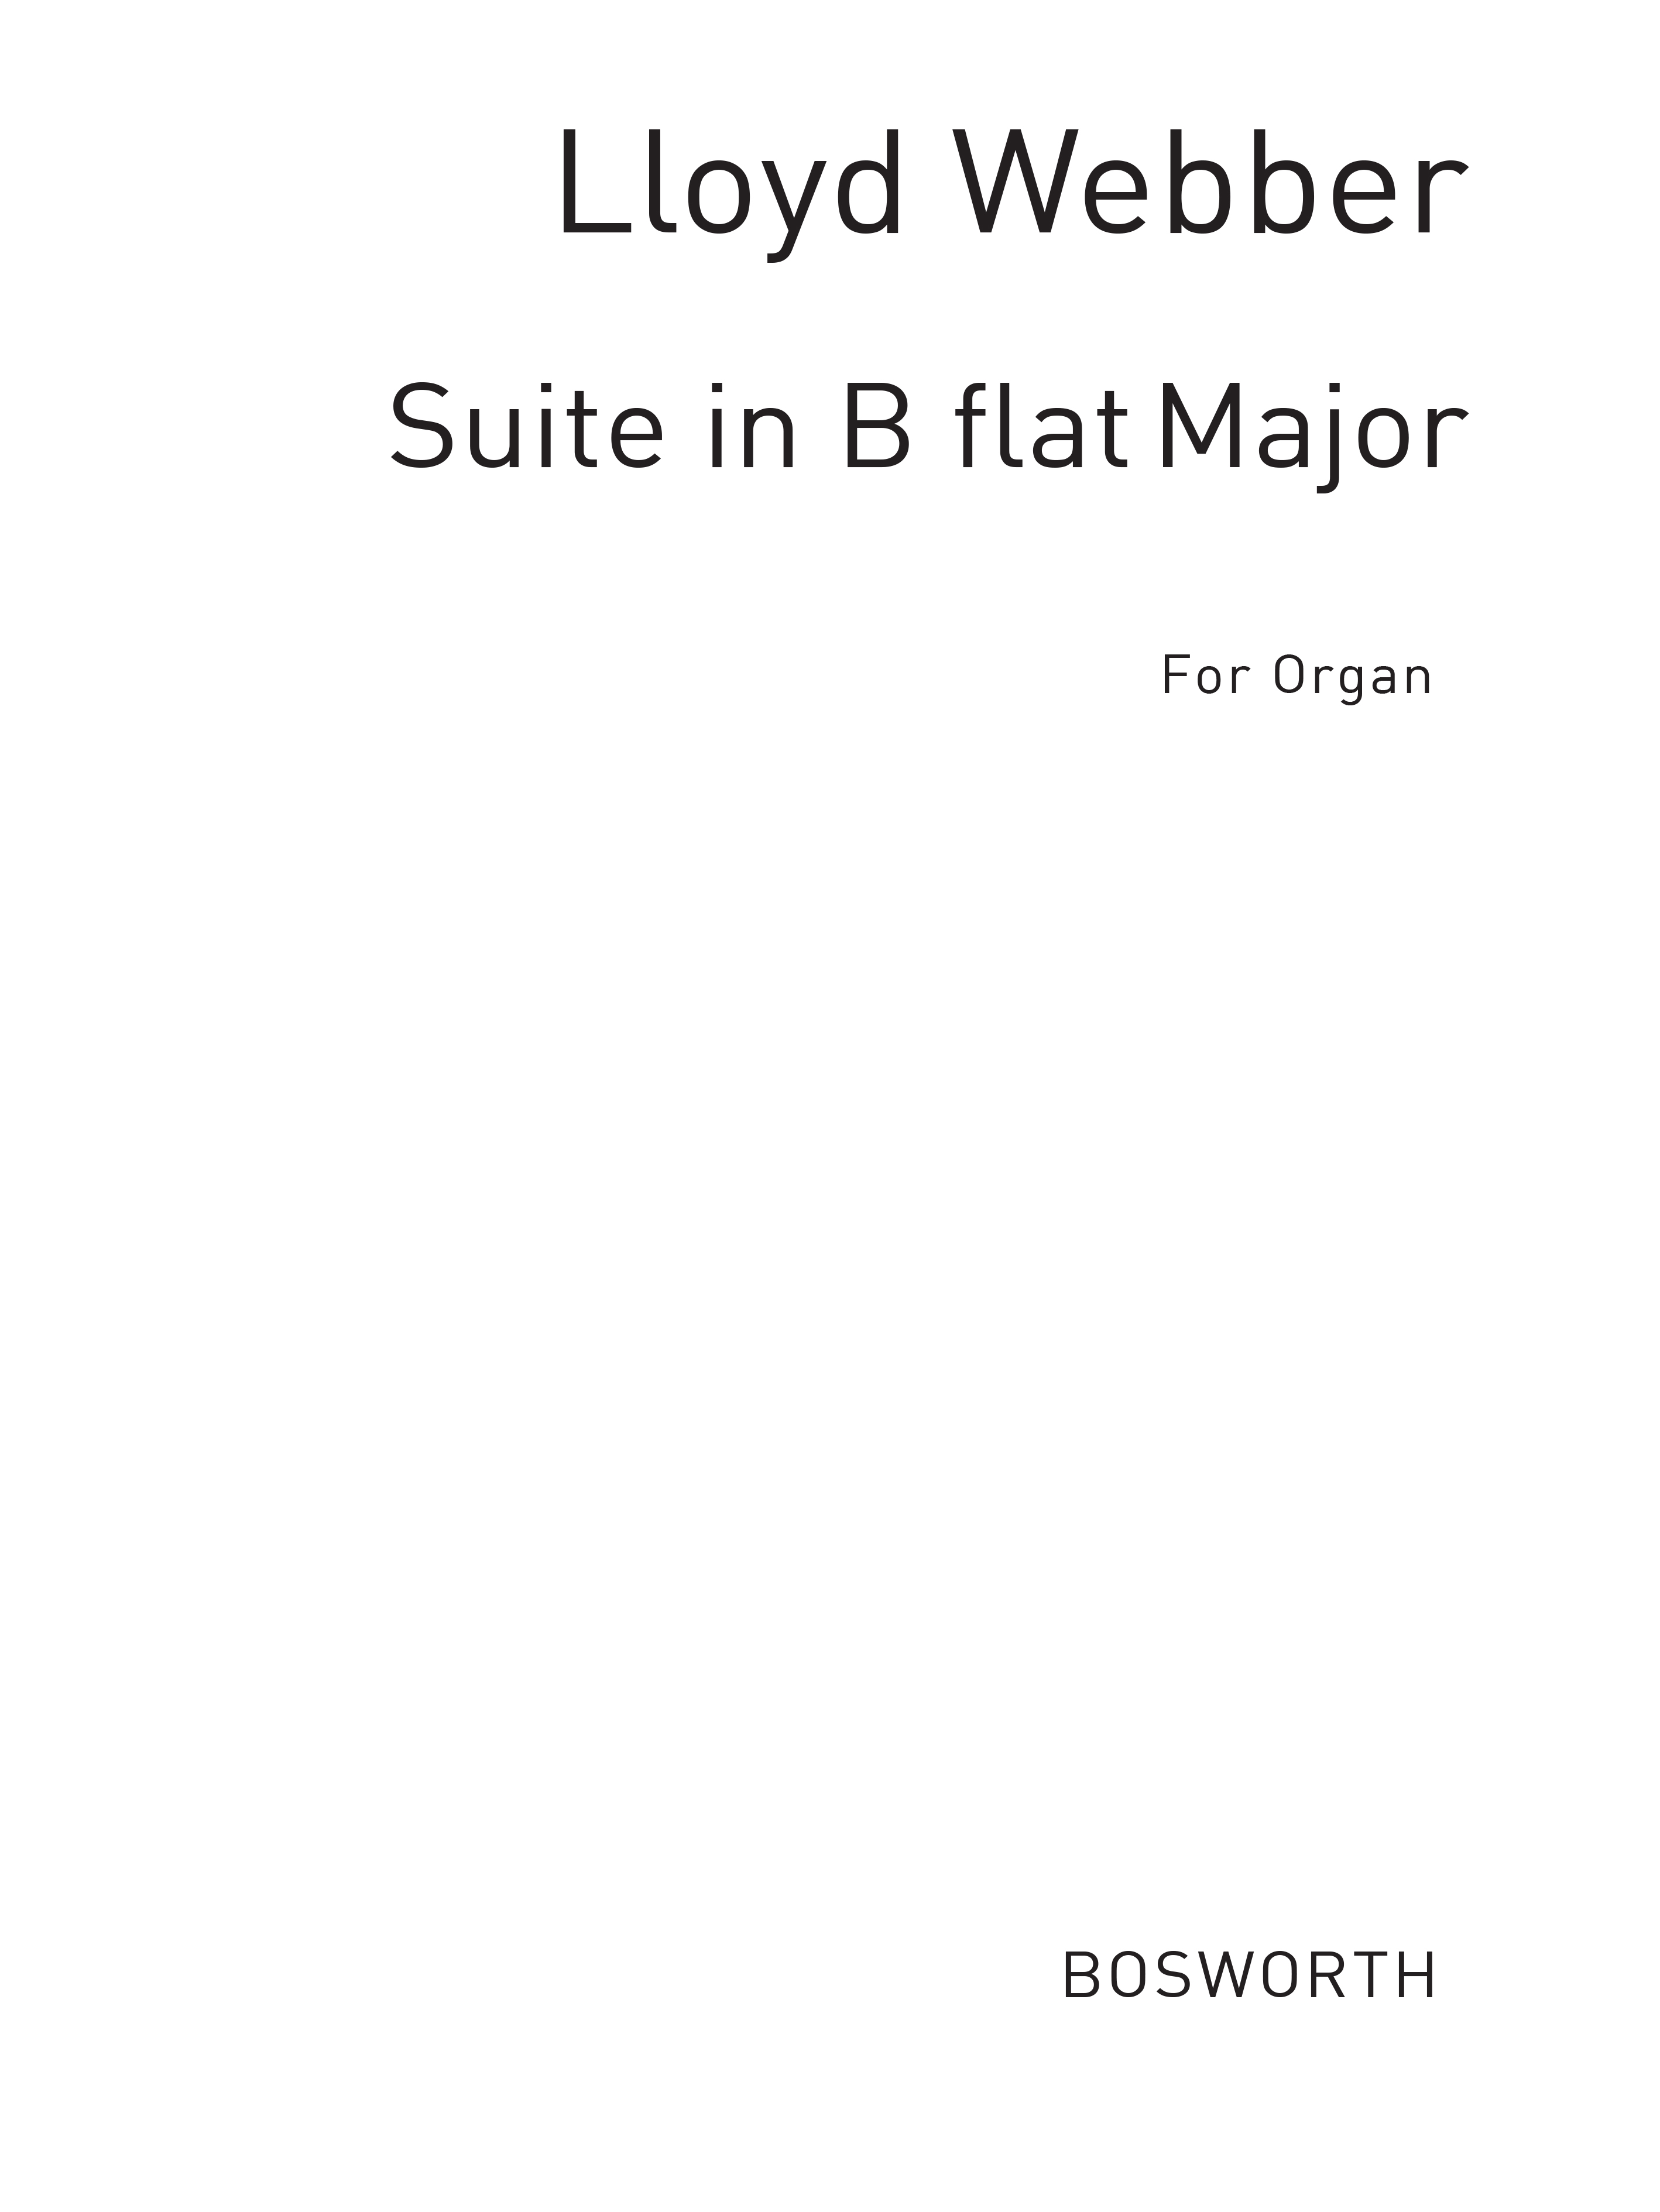 W.S. Lloyd Webber: Suite In B Flat For Organ